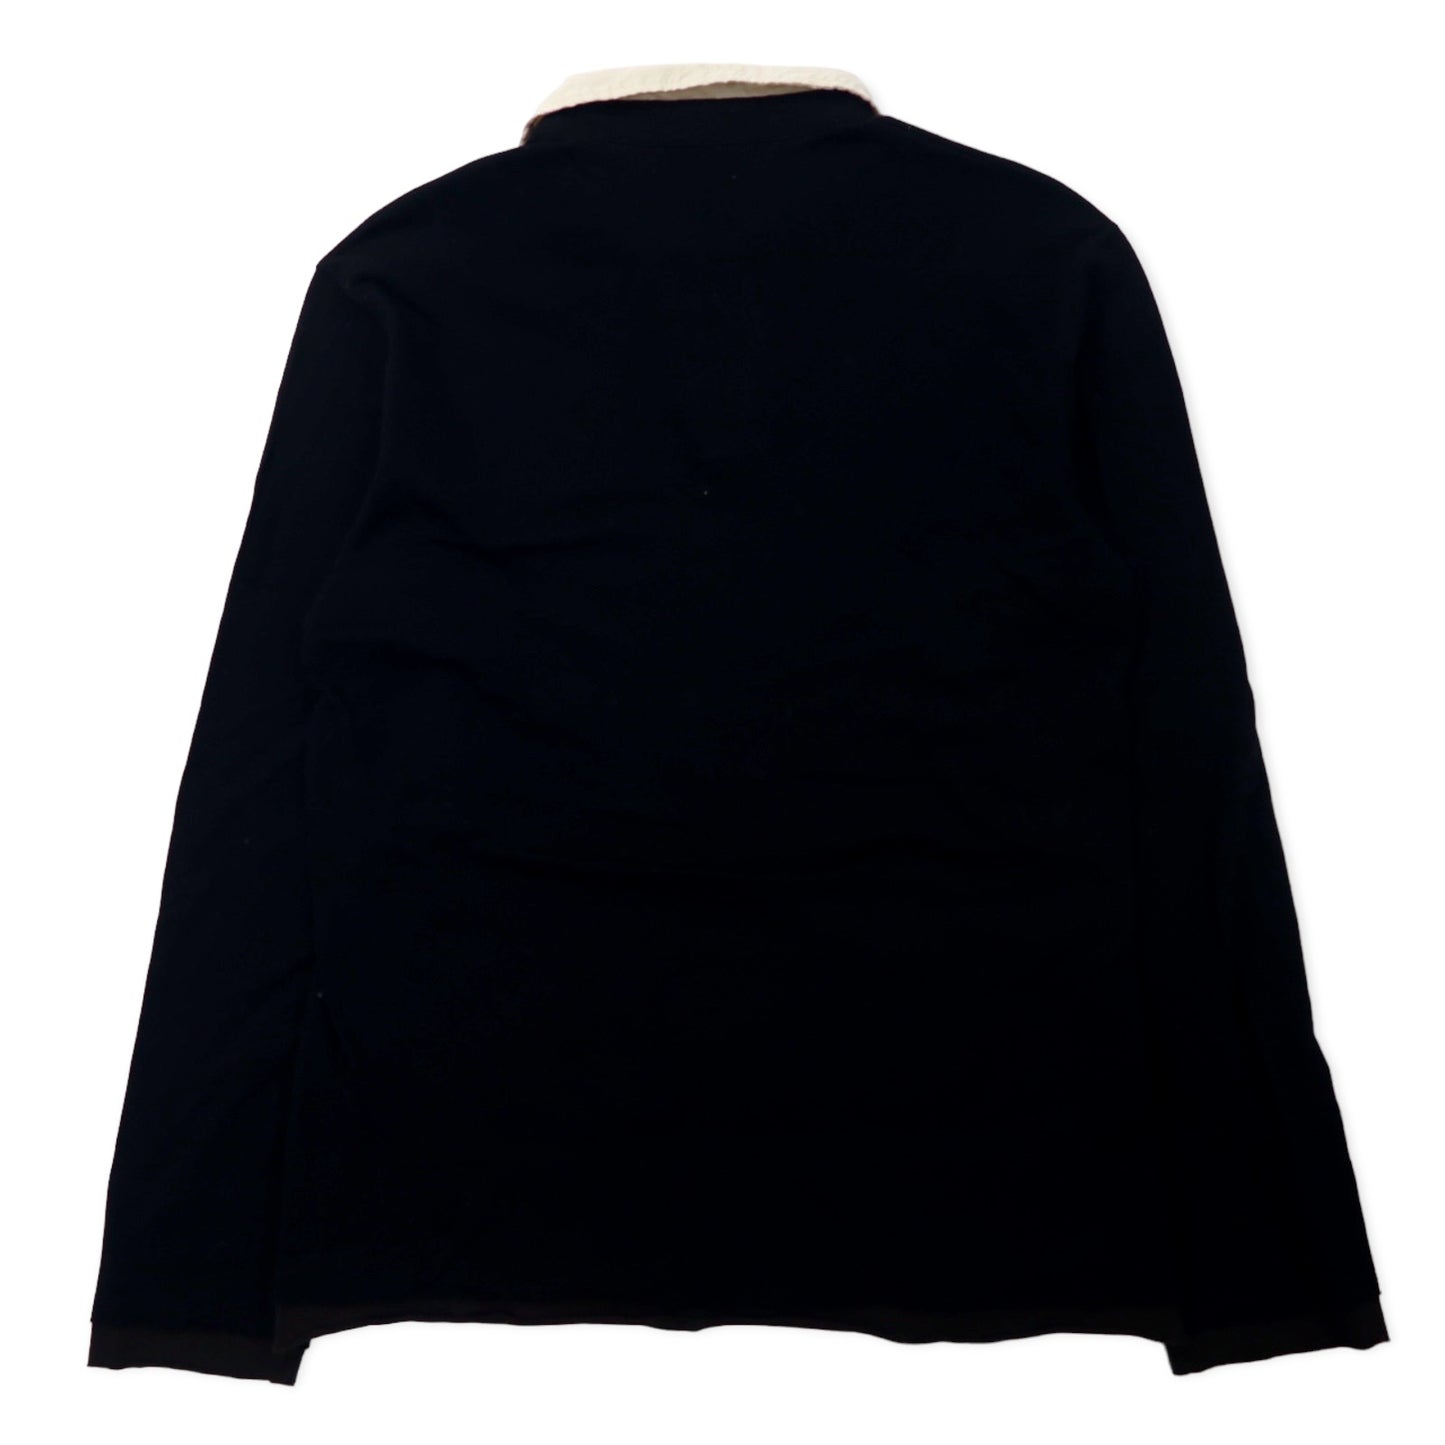 Paul Smith COLLECTION オープンカラー 長袖 ポロシャツ M ブラック コットン 鹿の子 レイヤードデザイン 日本製